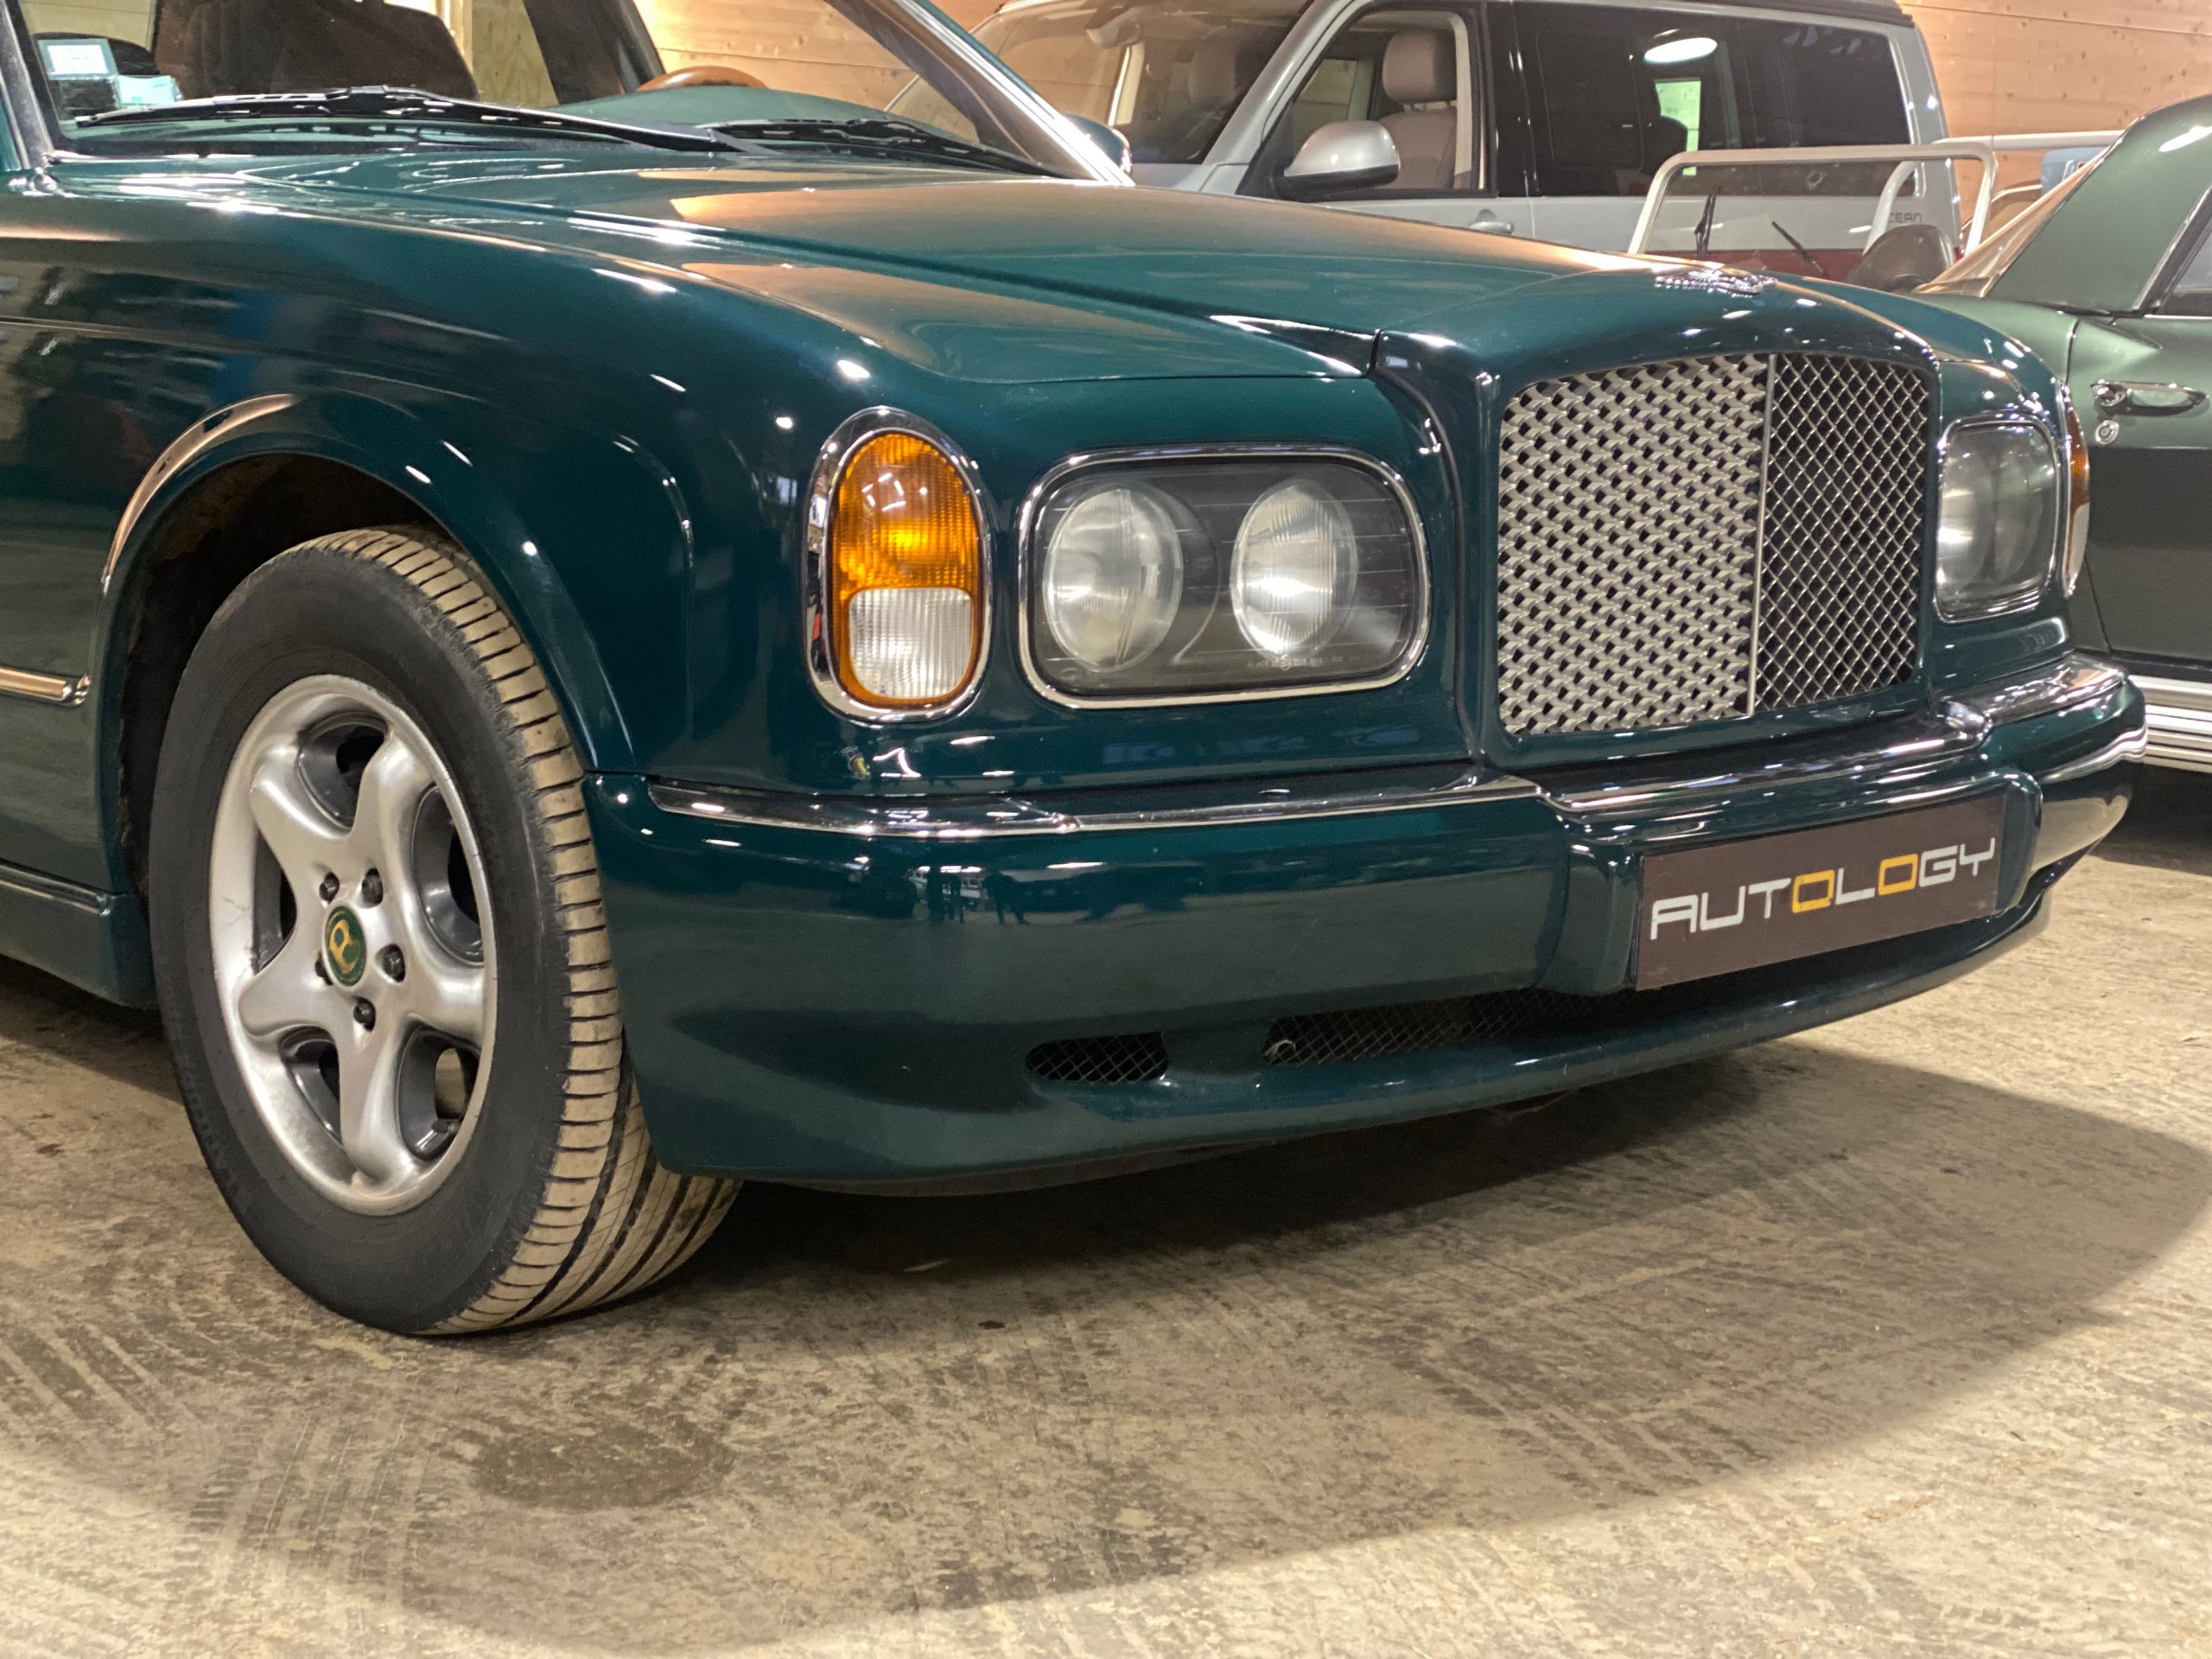 Bentley Arnage Green Label V8 4.4